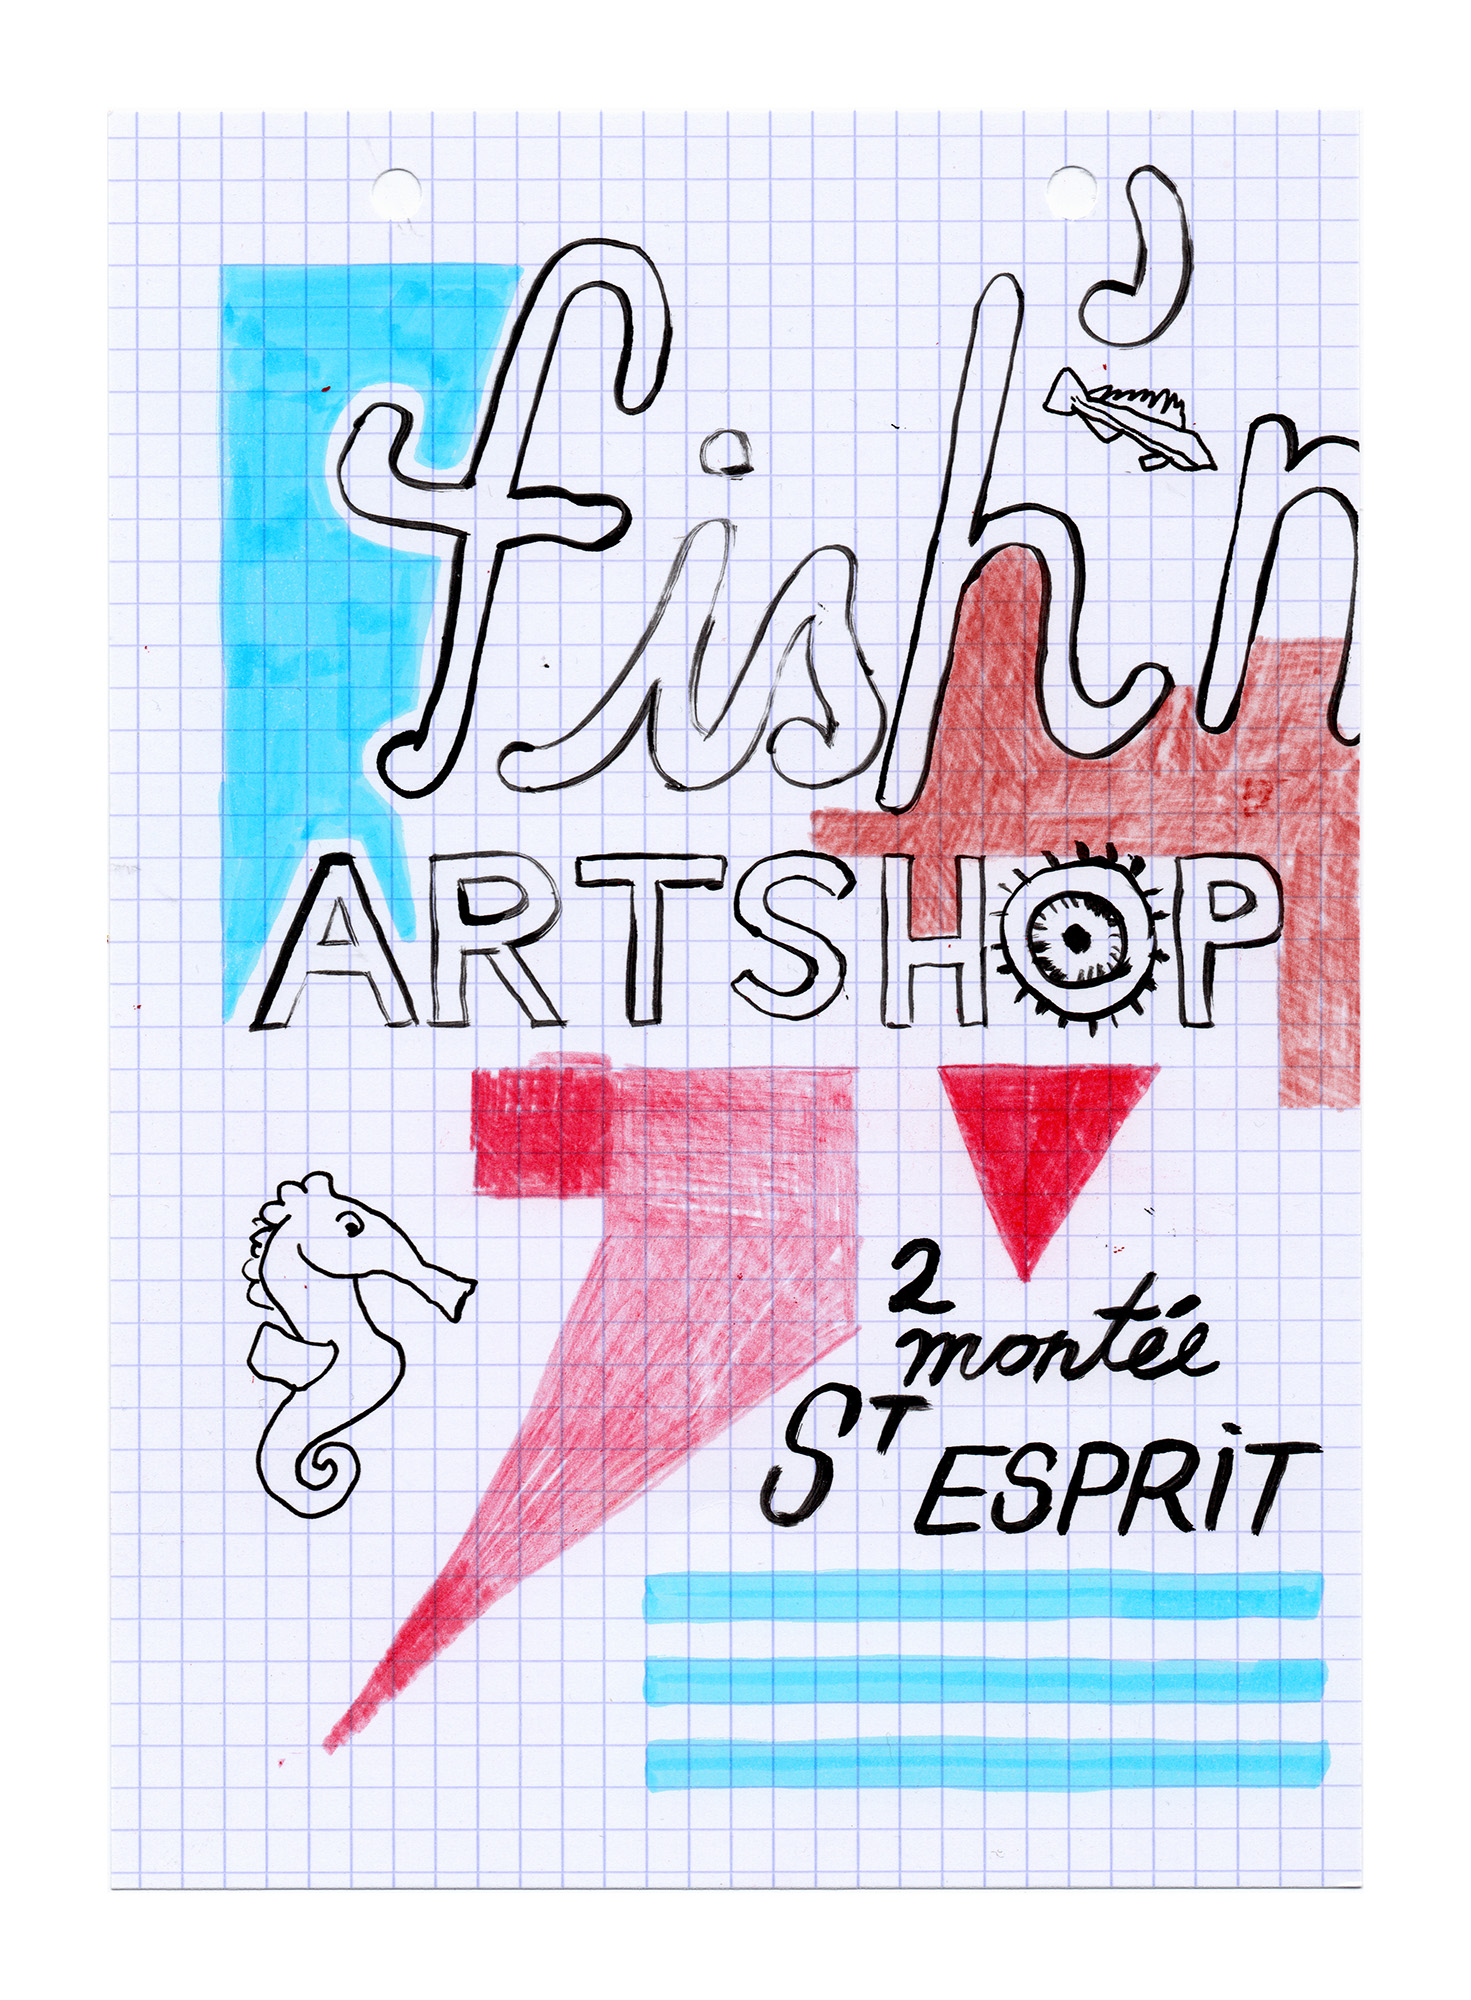 Fish'n Artshop.jpg